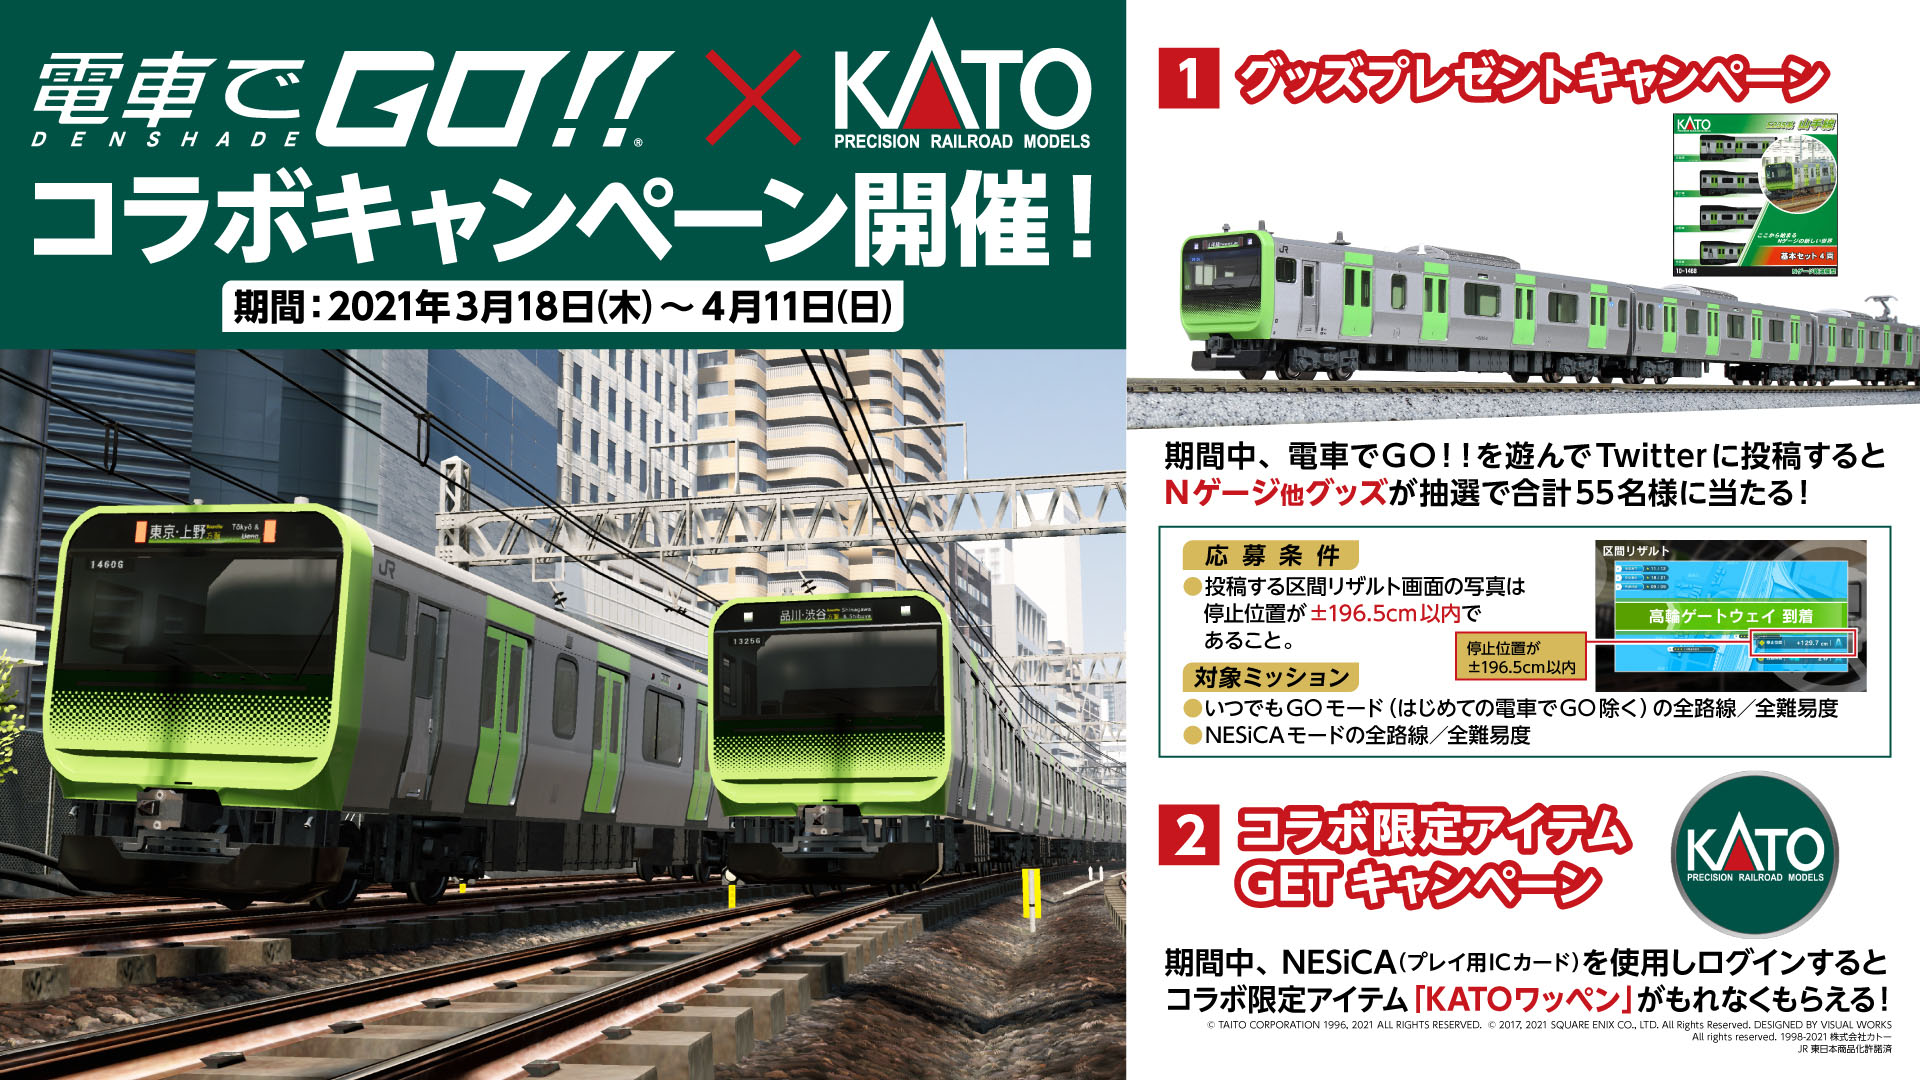 画像集一覧 電車でgo 新区間として京浜東北線の品川 田端間を実装 新要素となる 快速運転 を楽しもう